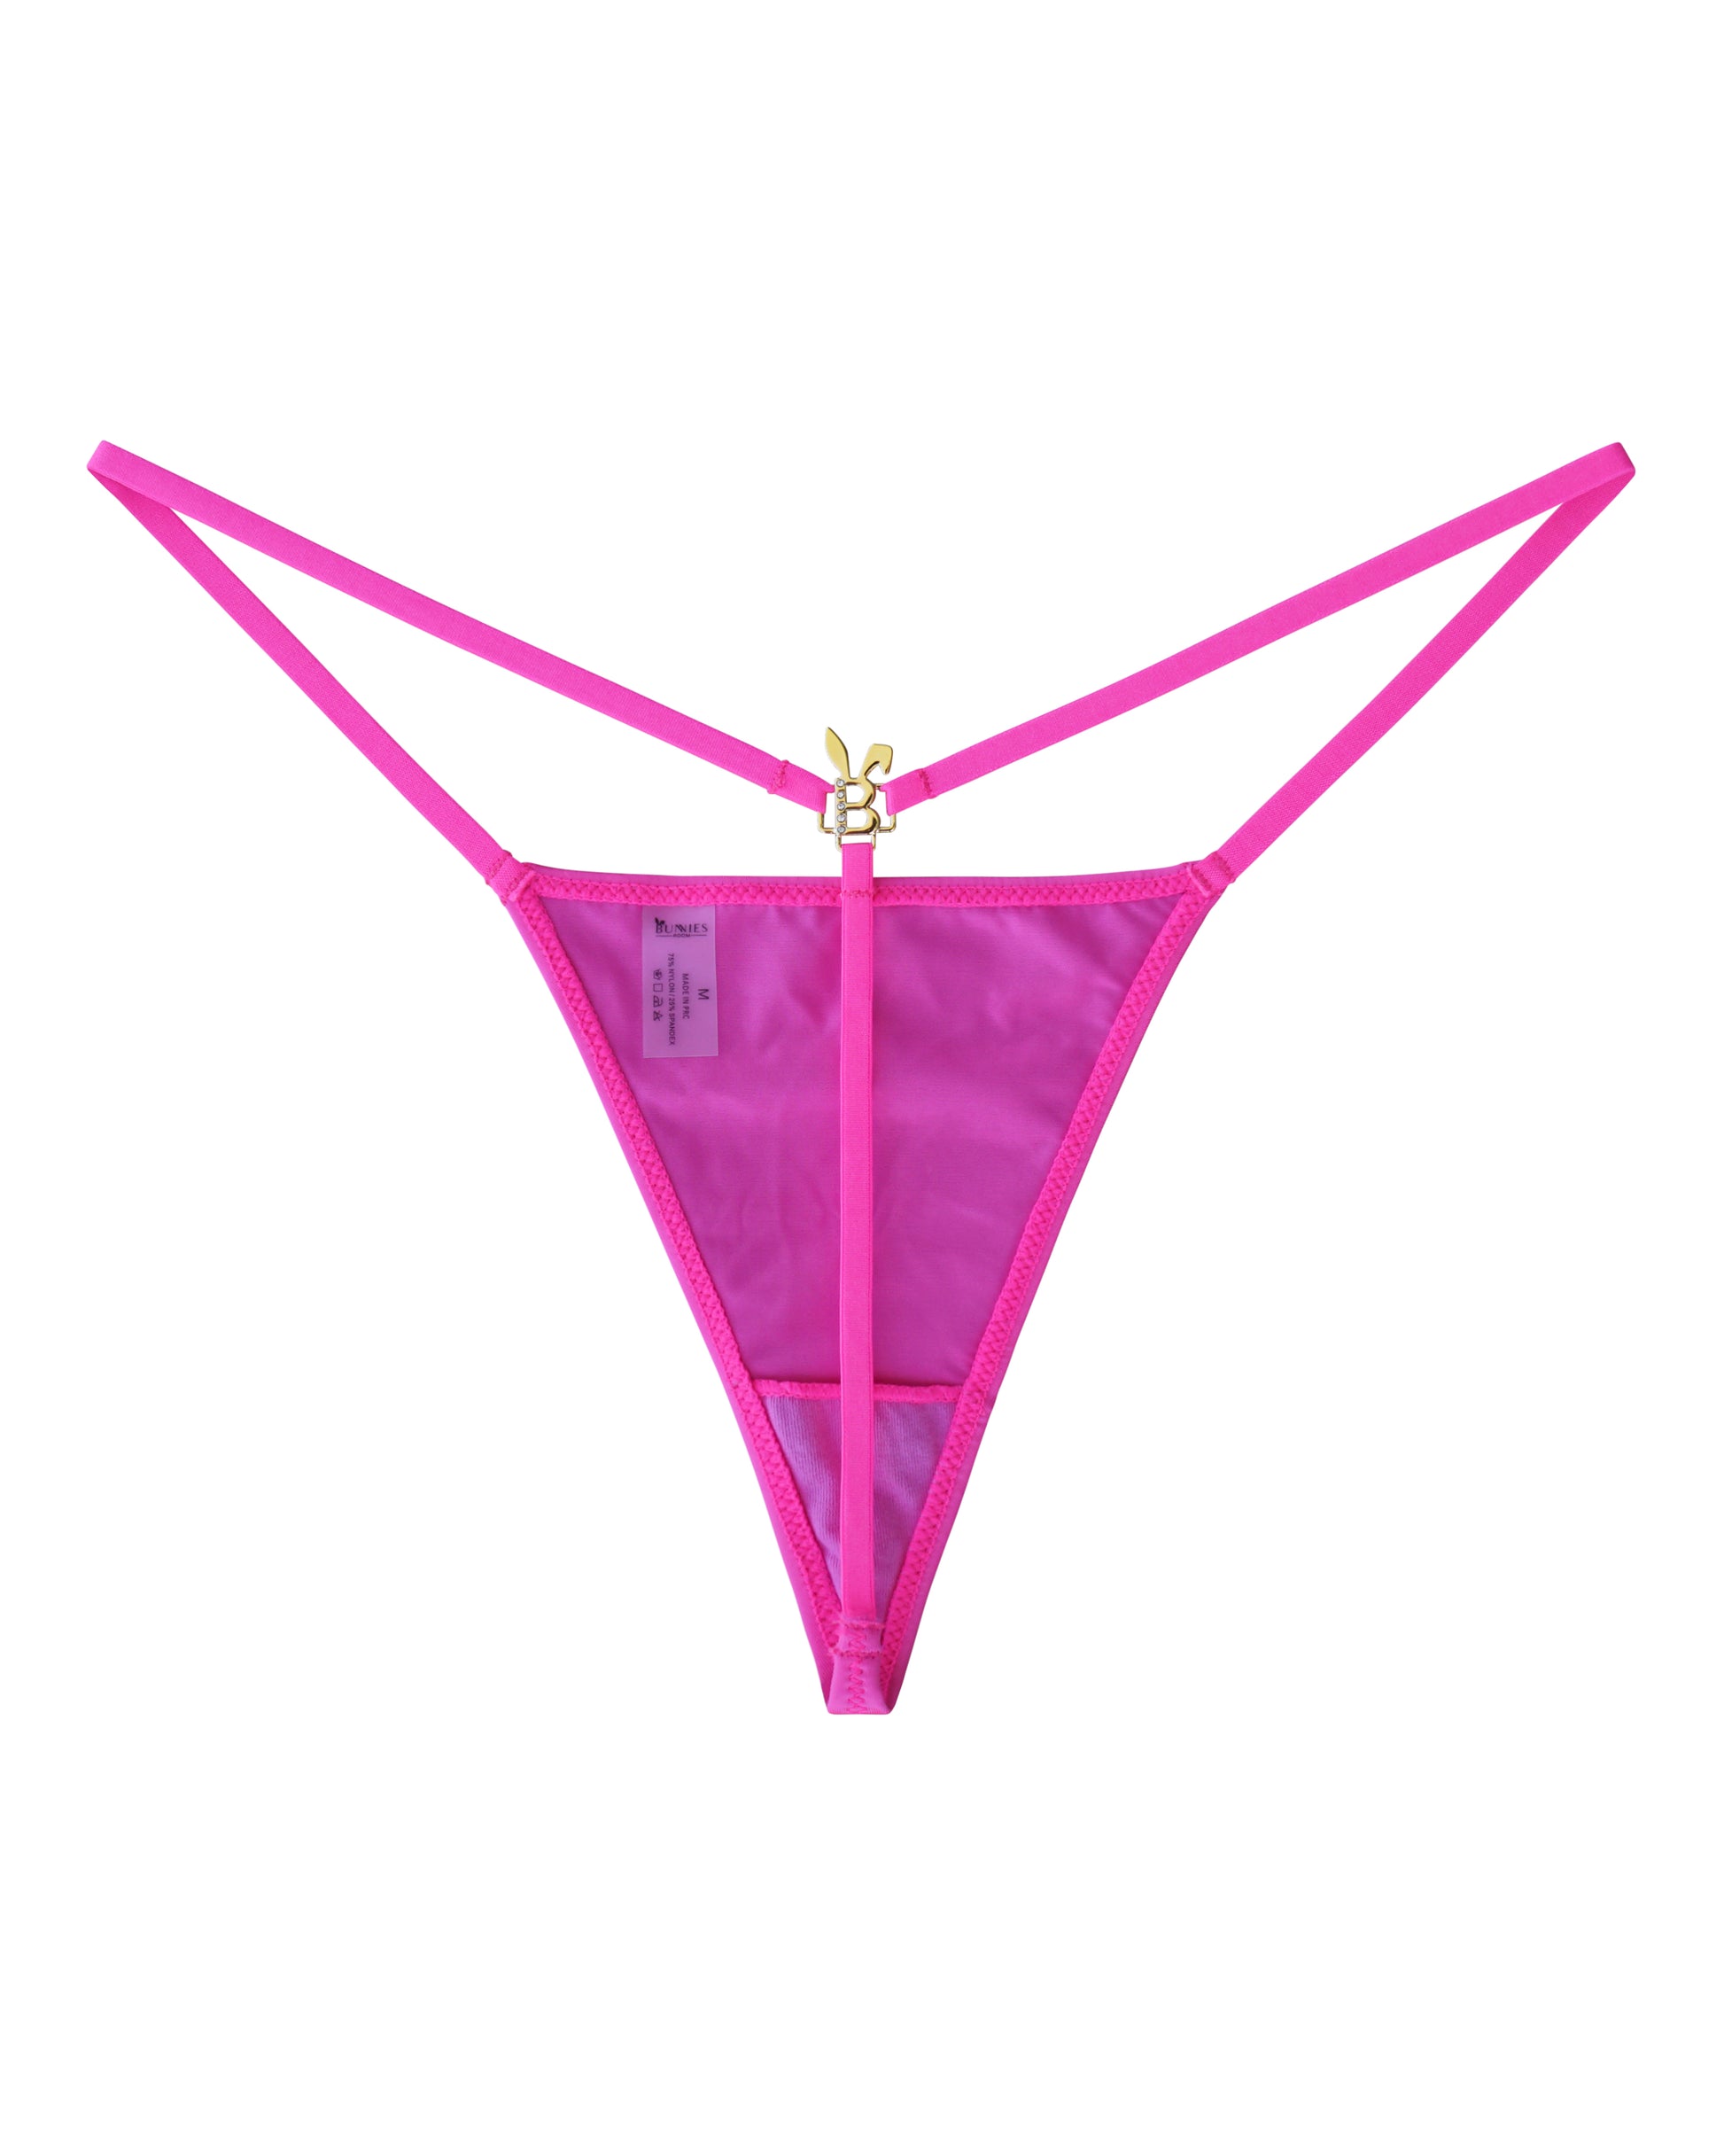  Pinks - Women's G-String & Thong Panties / Women's